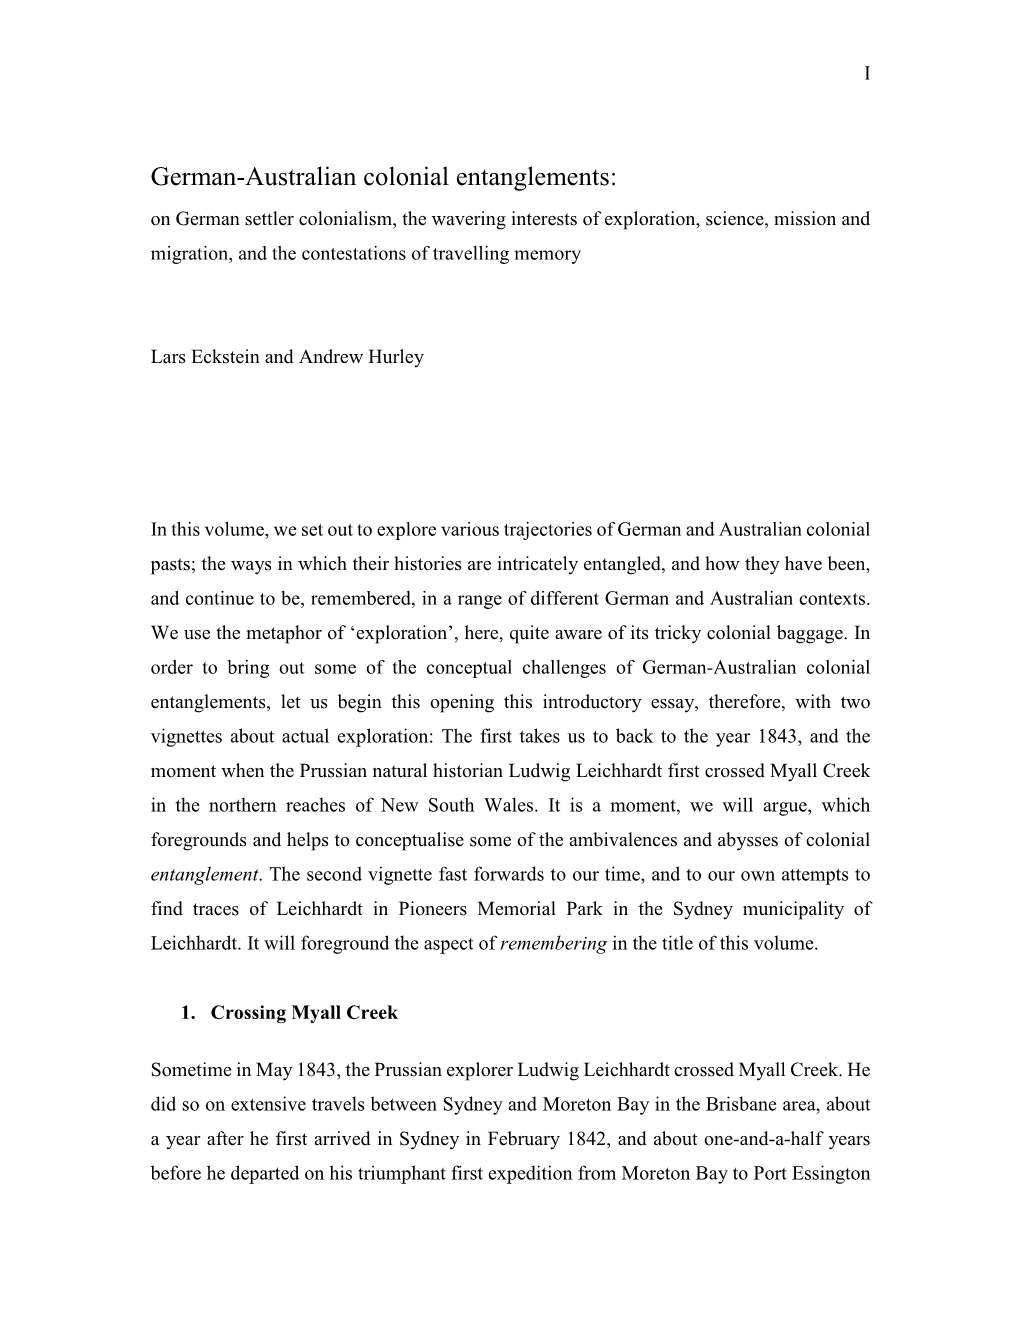 German-Australian Colonial Entanglements